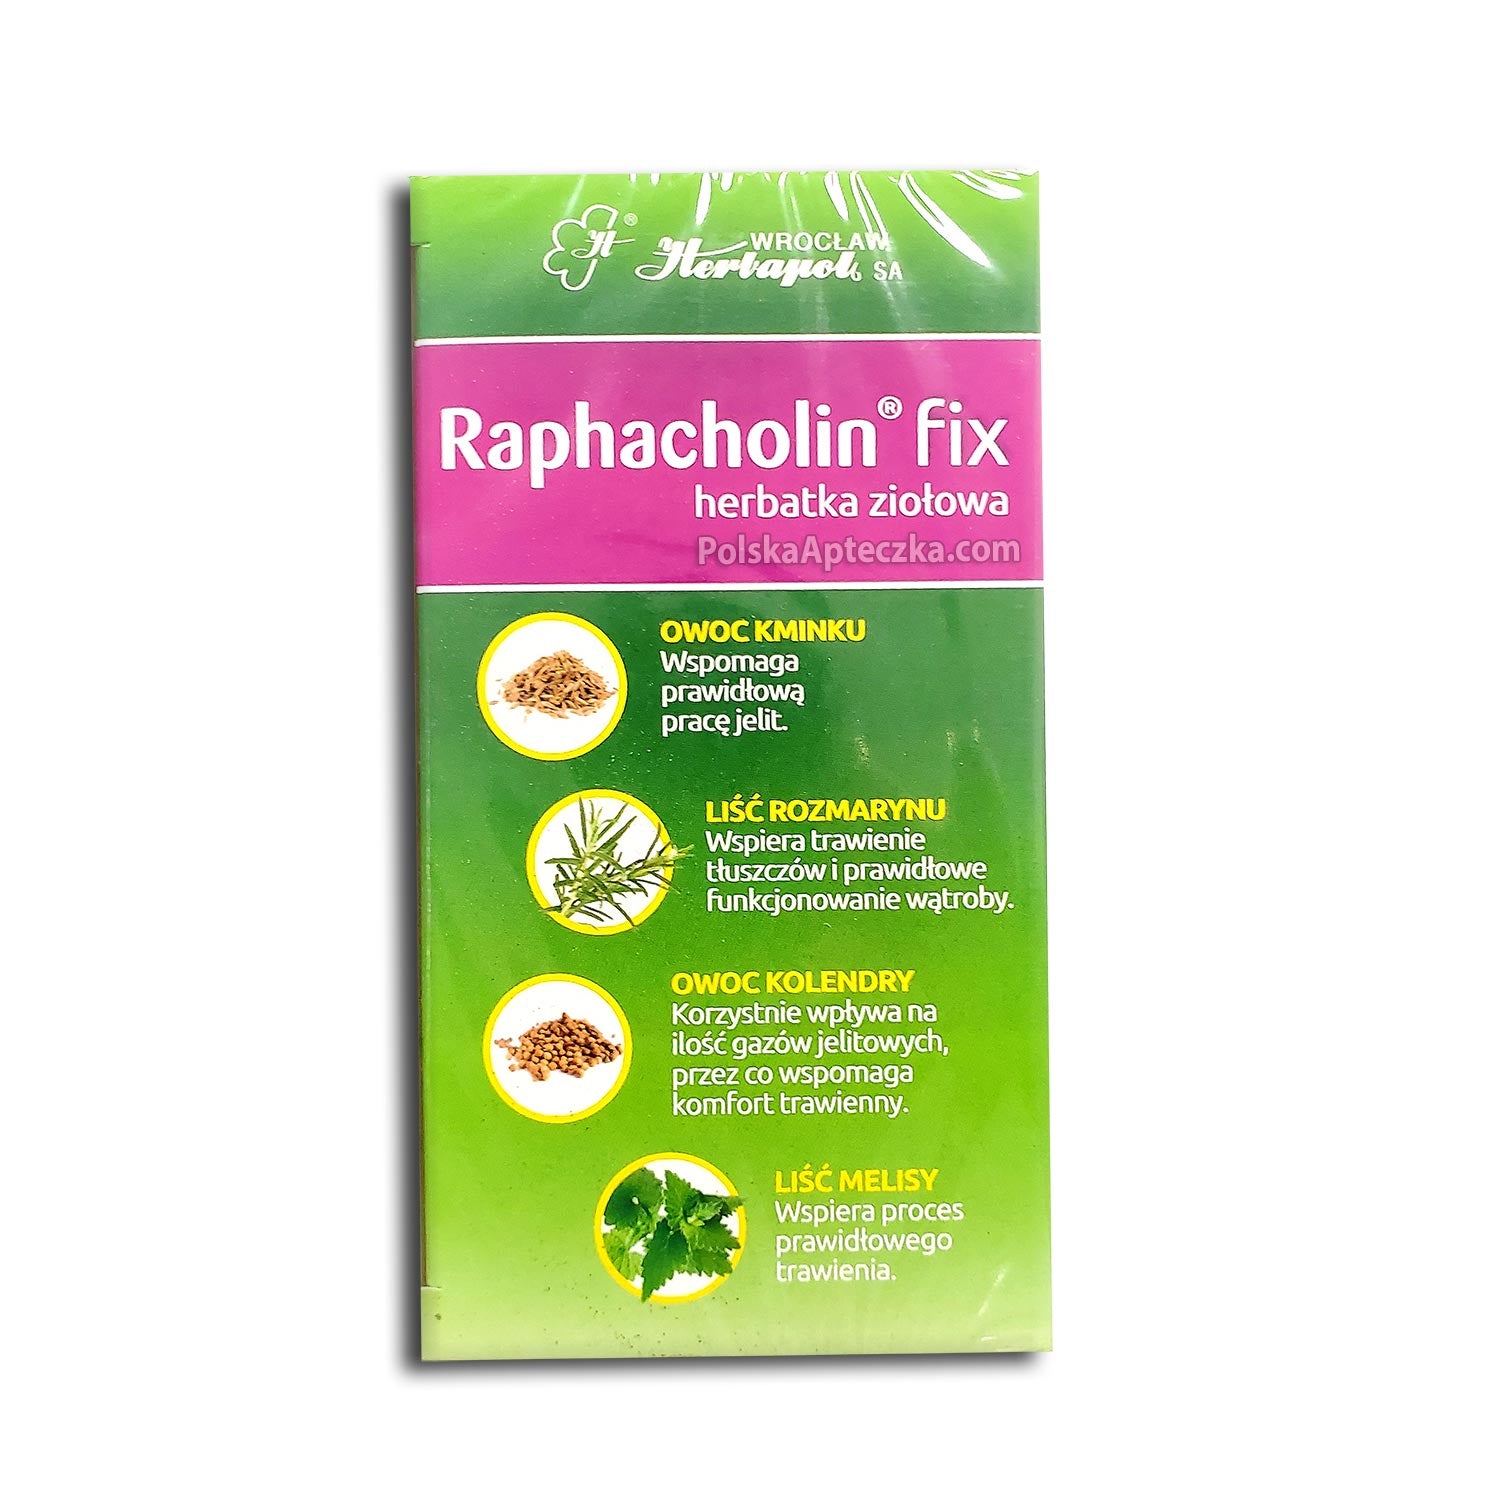 Raphacholin Fix herbatka ziołowa 20x3g, Herbapol